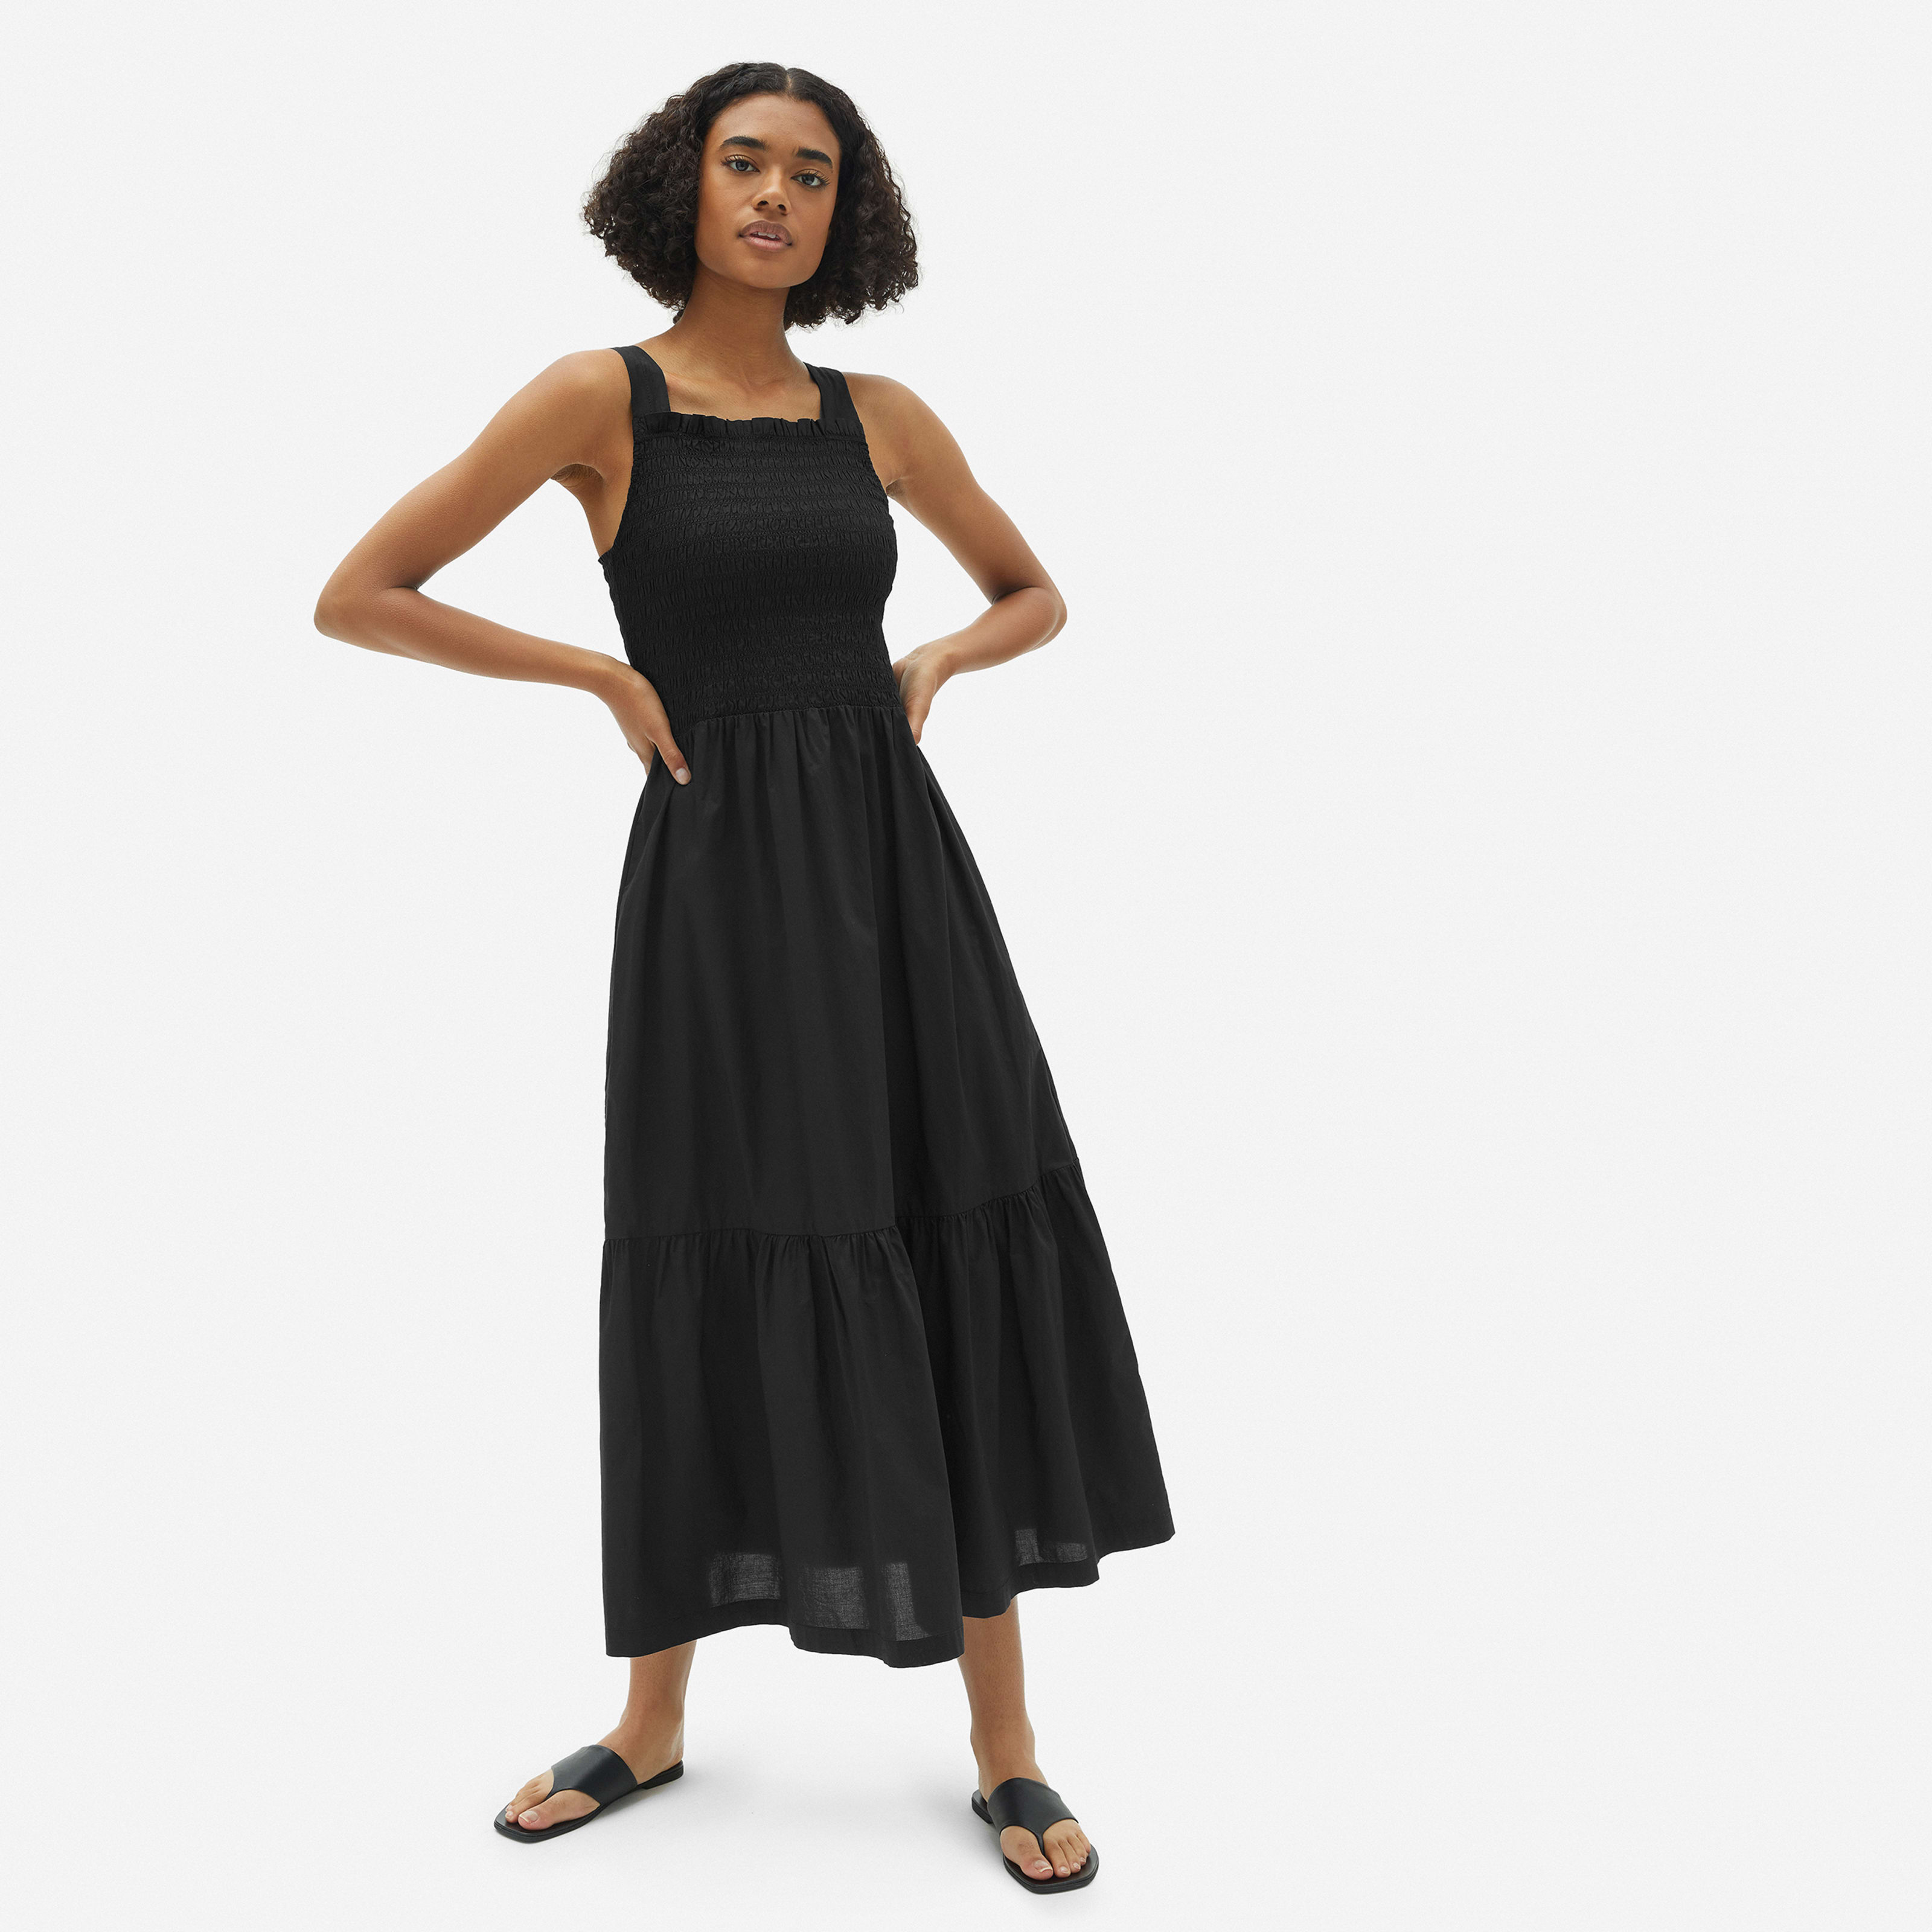 women's smock dress by everlane in black, size xxs